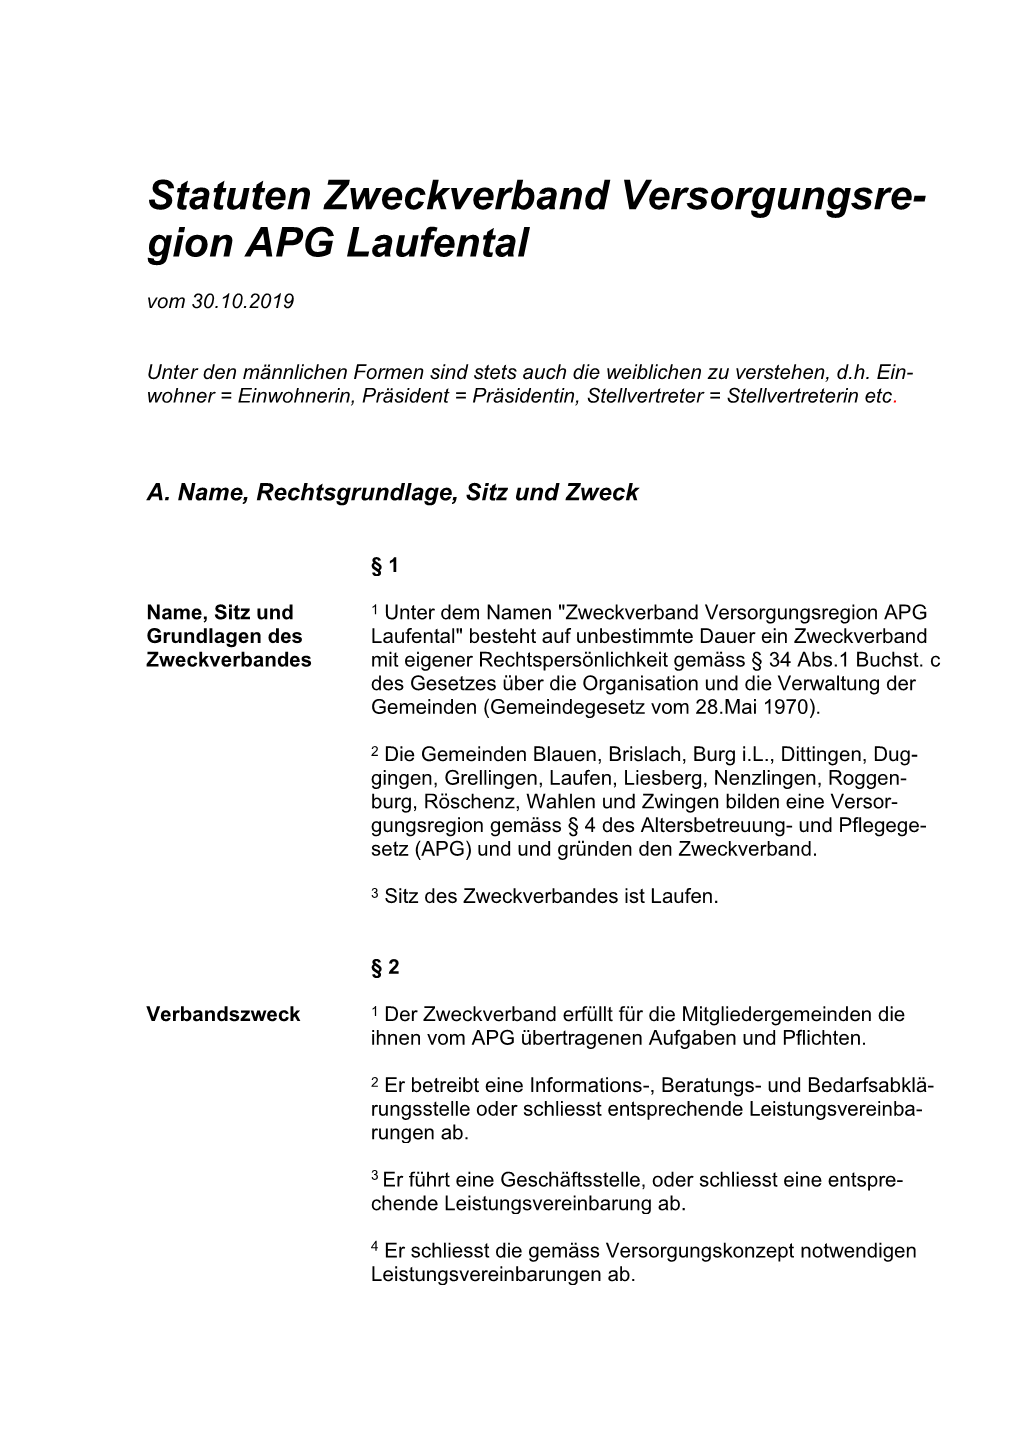 Statuten Zweckverband Versorgungsregion APG Laufental / 30.10.2019 Seite 2